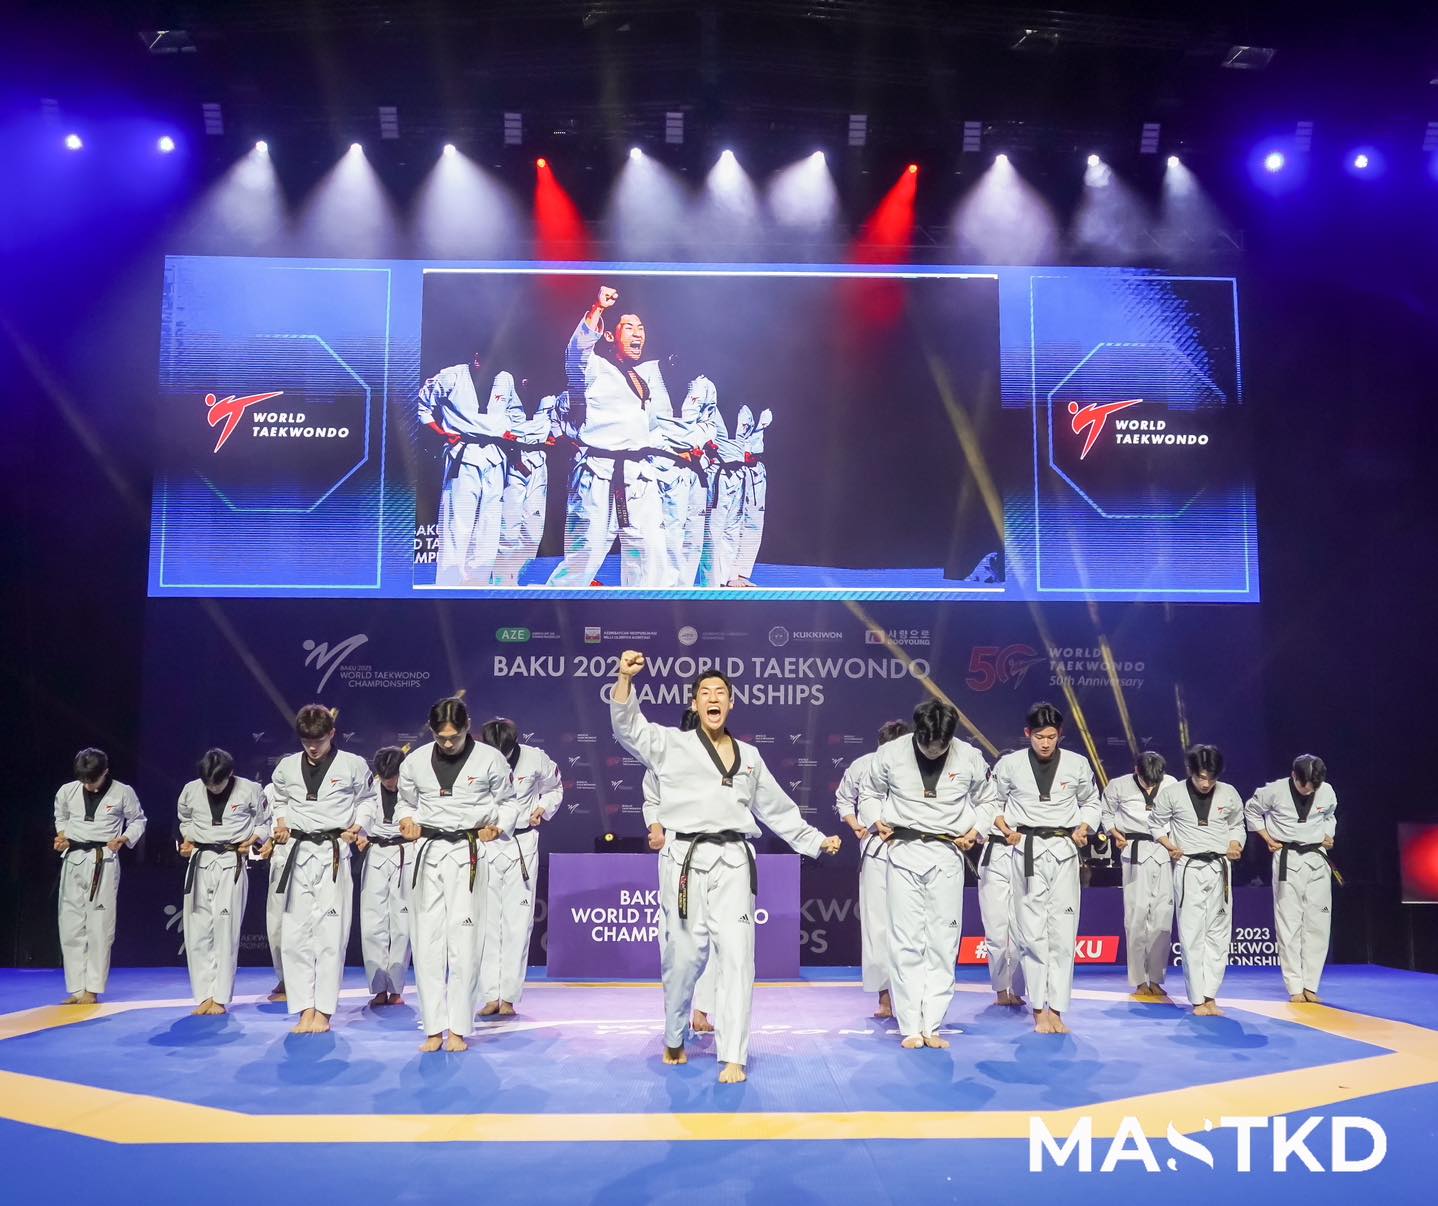 Star-studded performances dazzle at Opening Ceremony of Baku 2023 World Taekwondo Championships